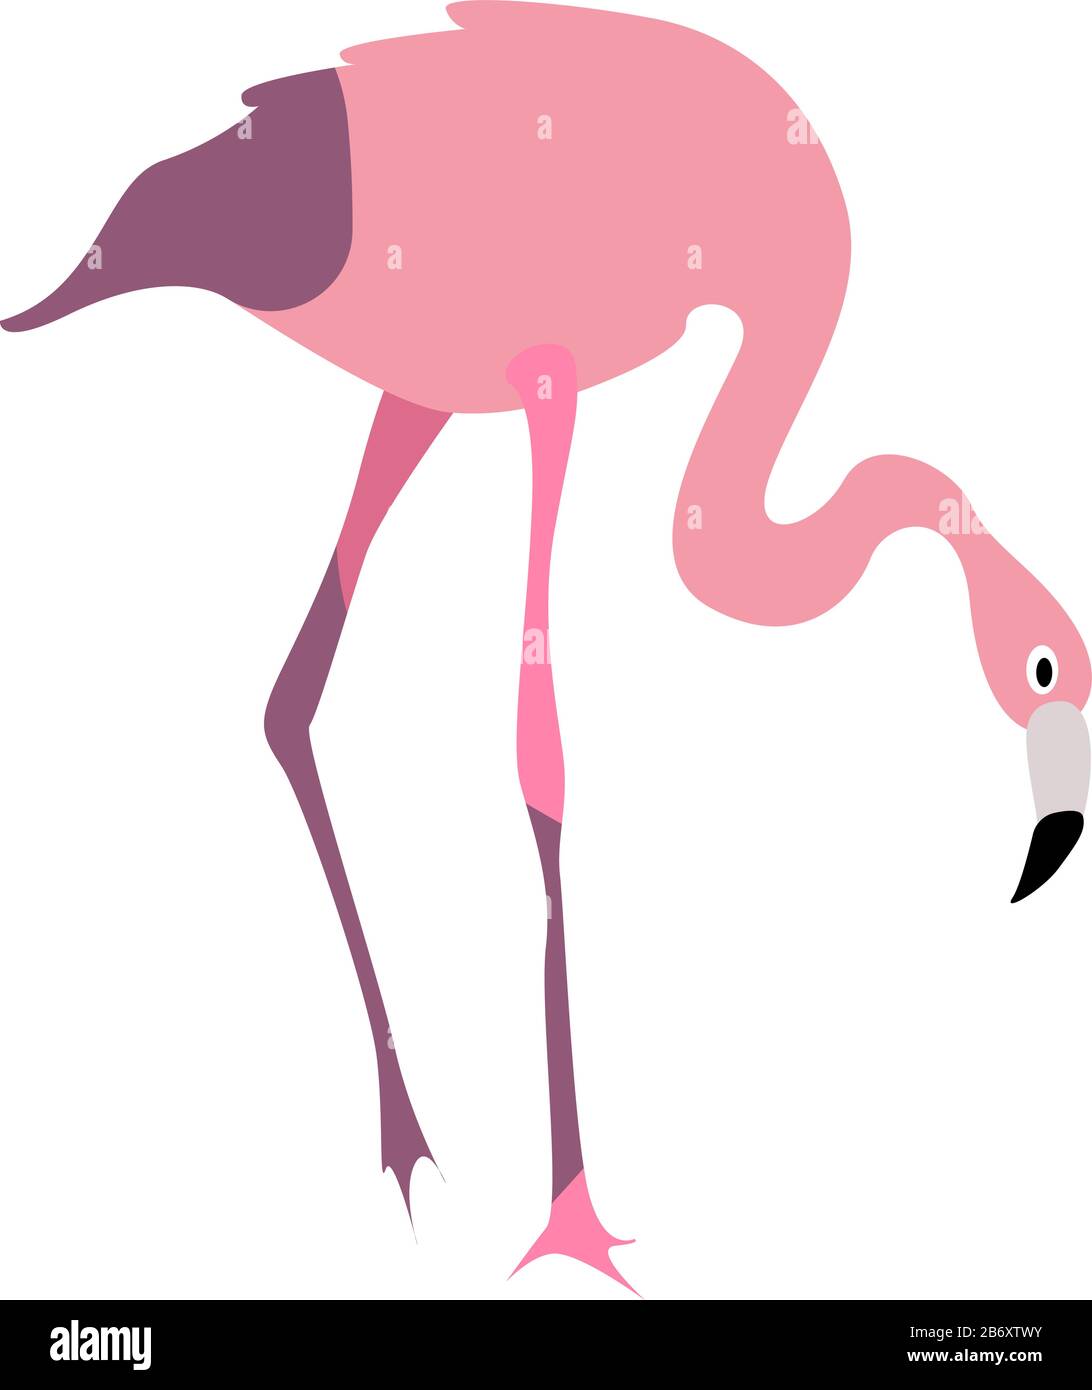 Flamingo bird, illustration, vecteur sur fond blanc. Illustration de Vecteur